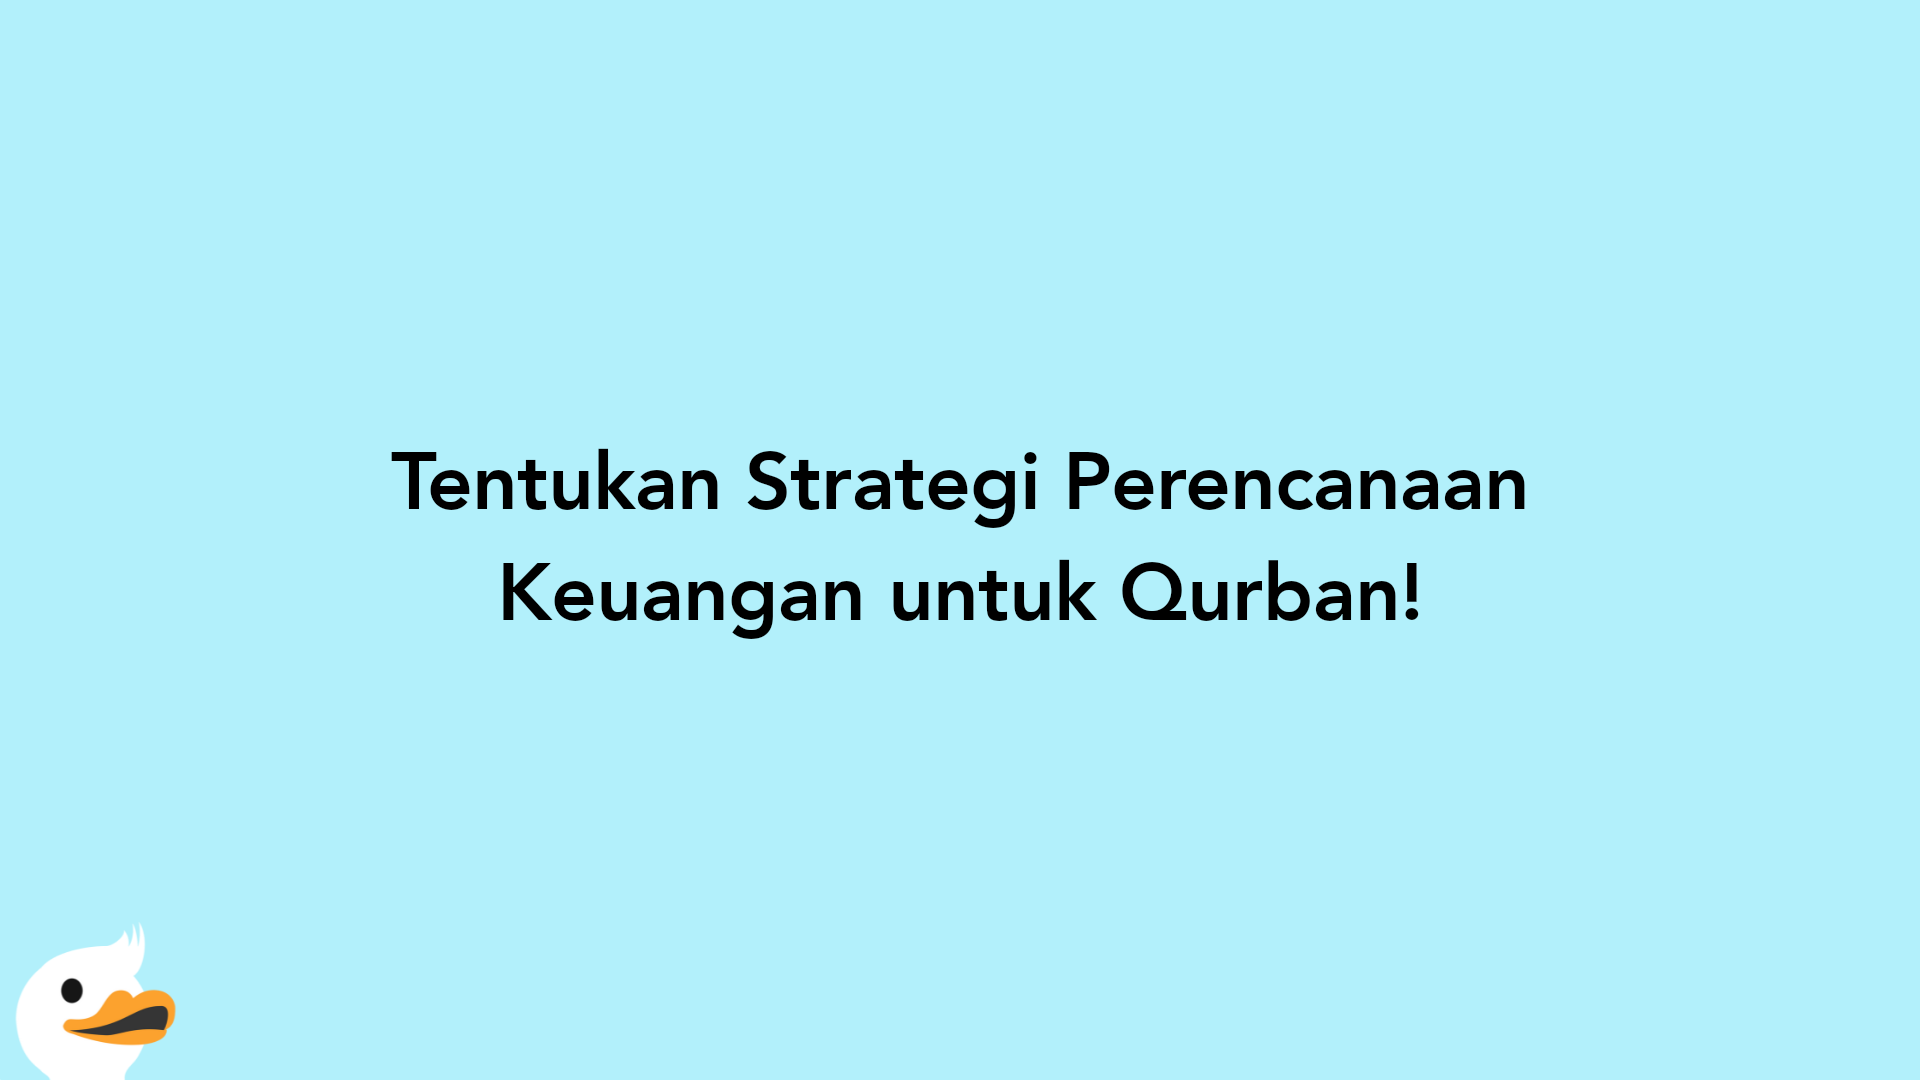 Tentukan Strategi Perencanaan Keuangan untuk Qurban!